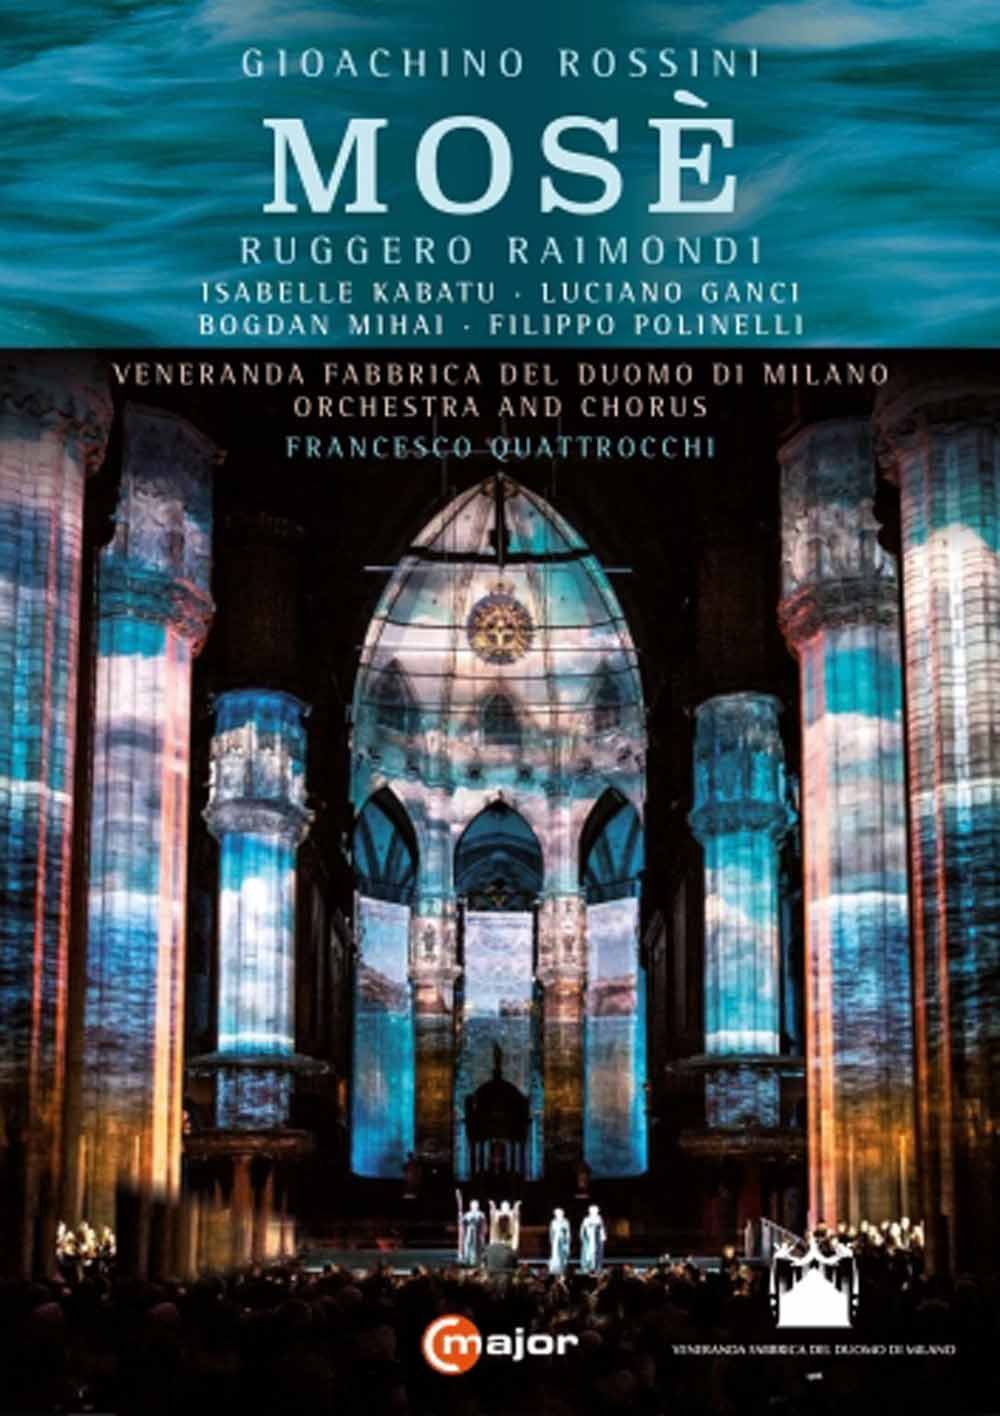 Rossini - Mose | Ruggero Raimondi, Bogdan Mihai, Gioachino Rossini, Francesco Quattrocchi